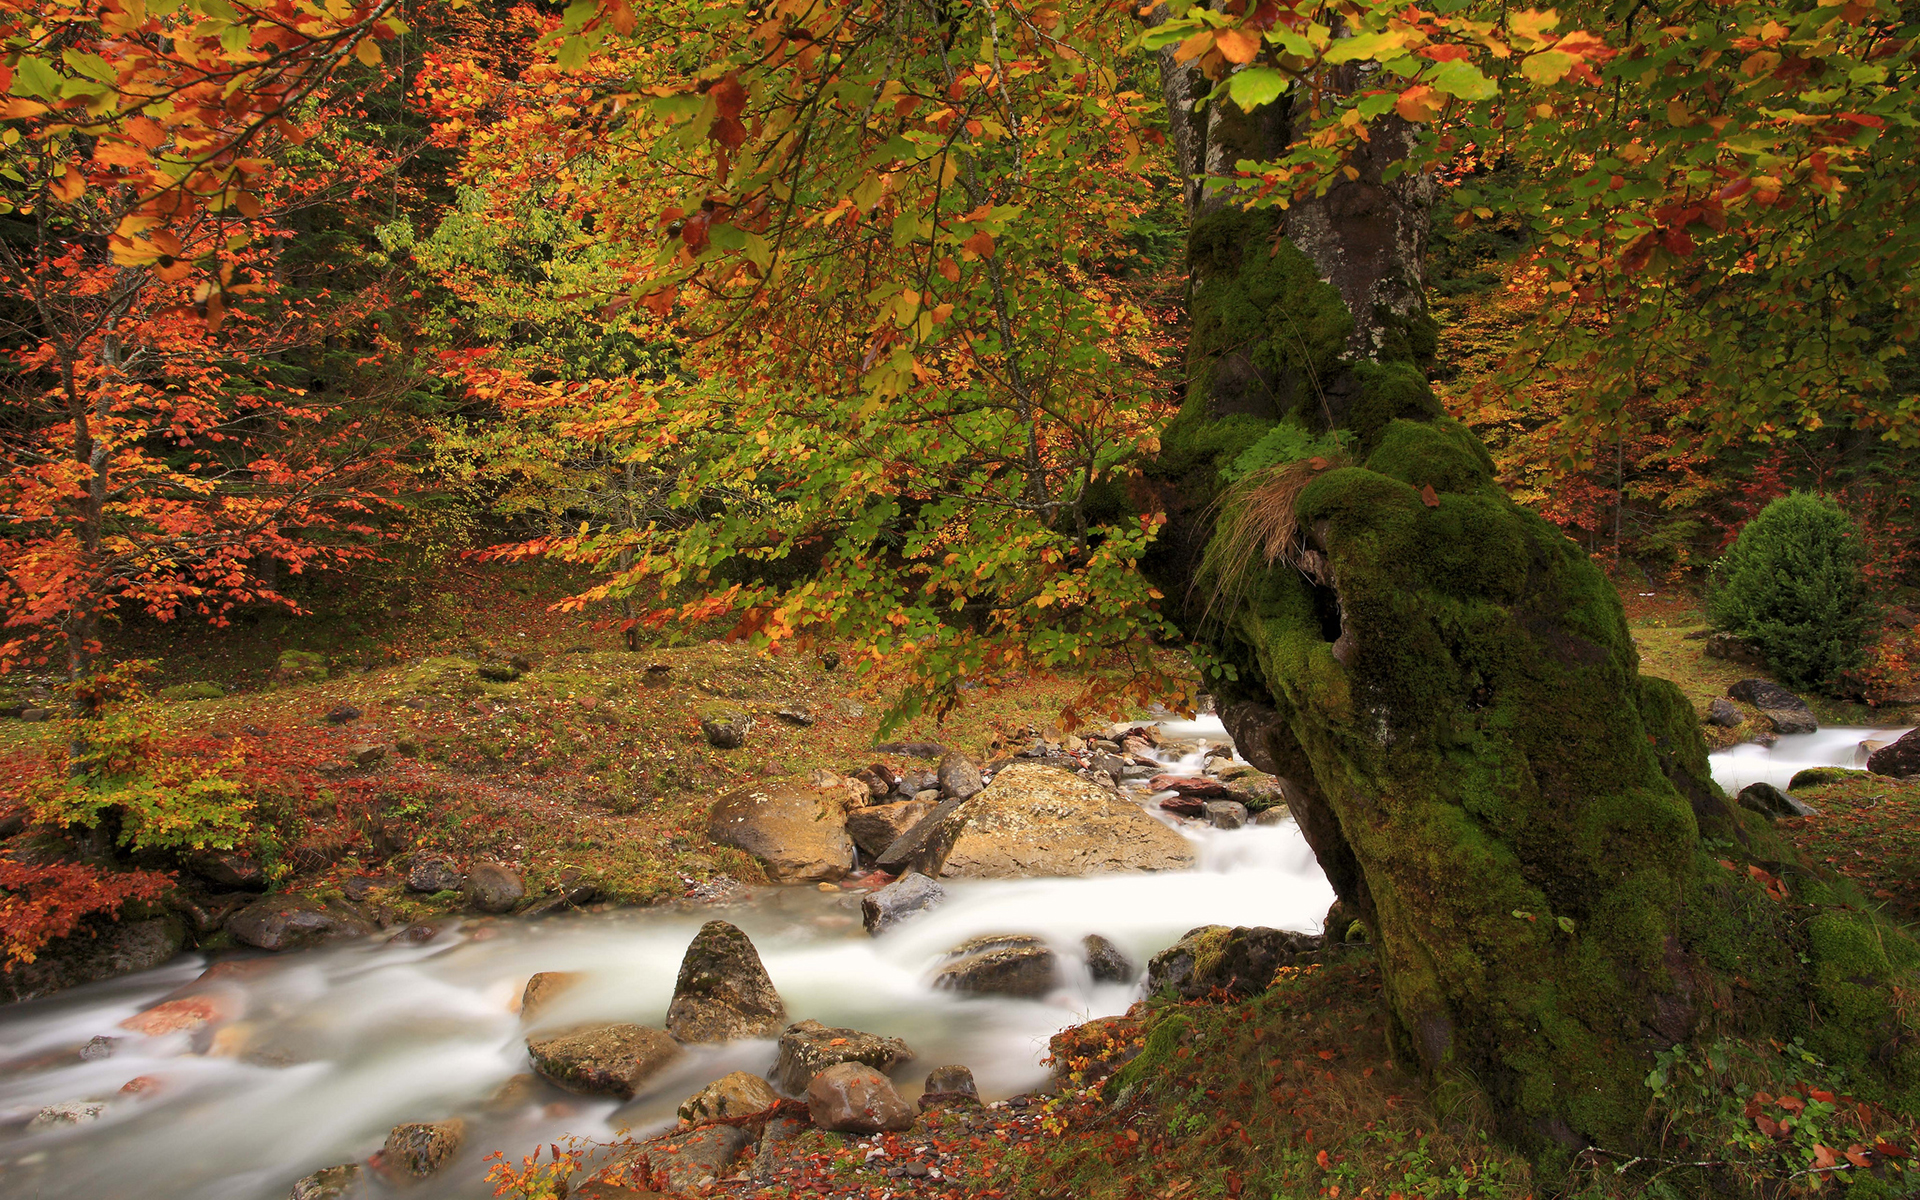 flows through autumn